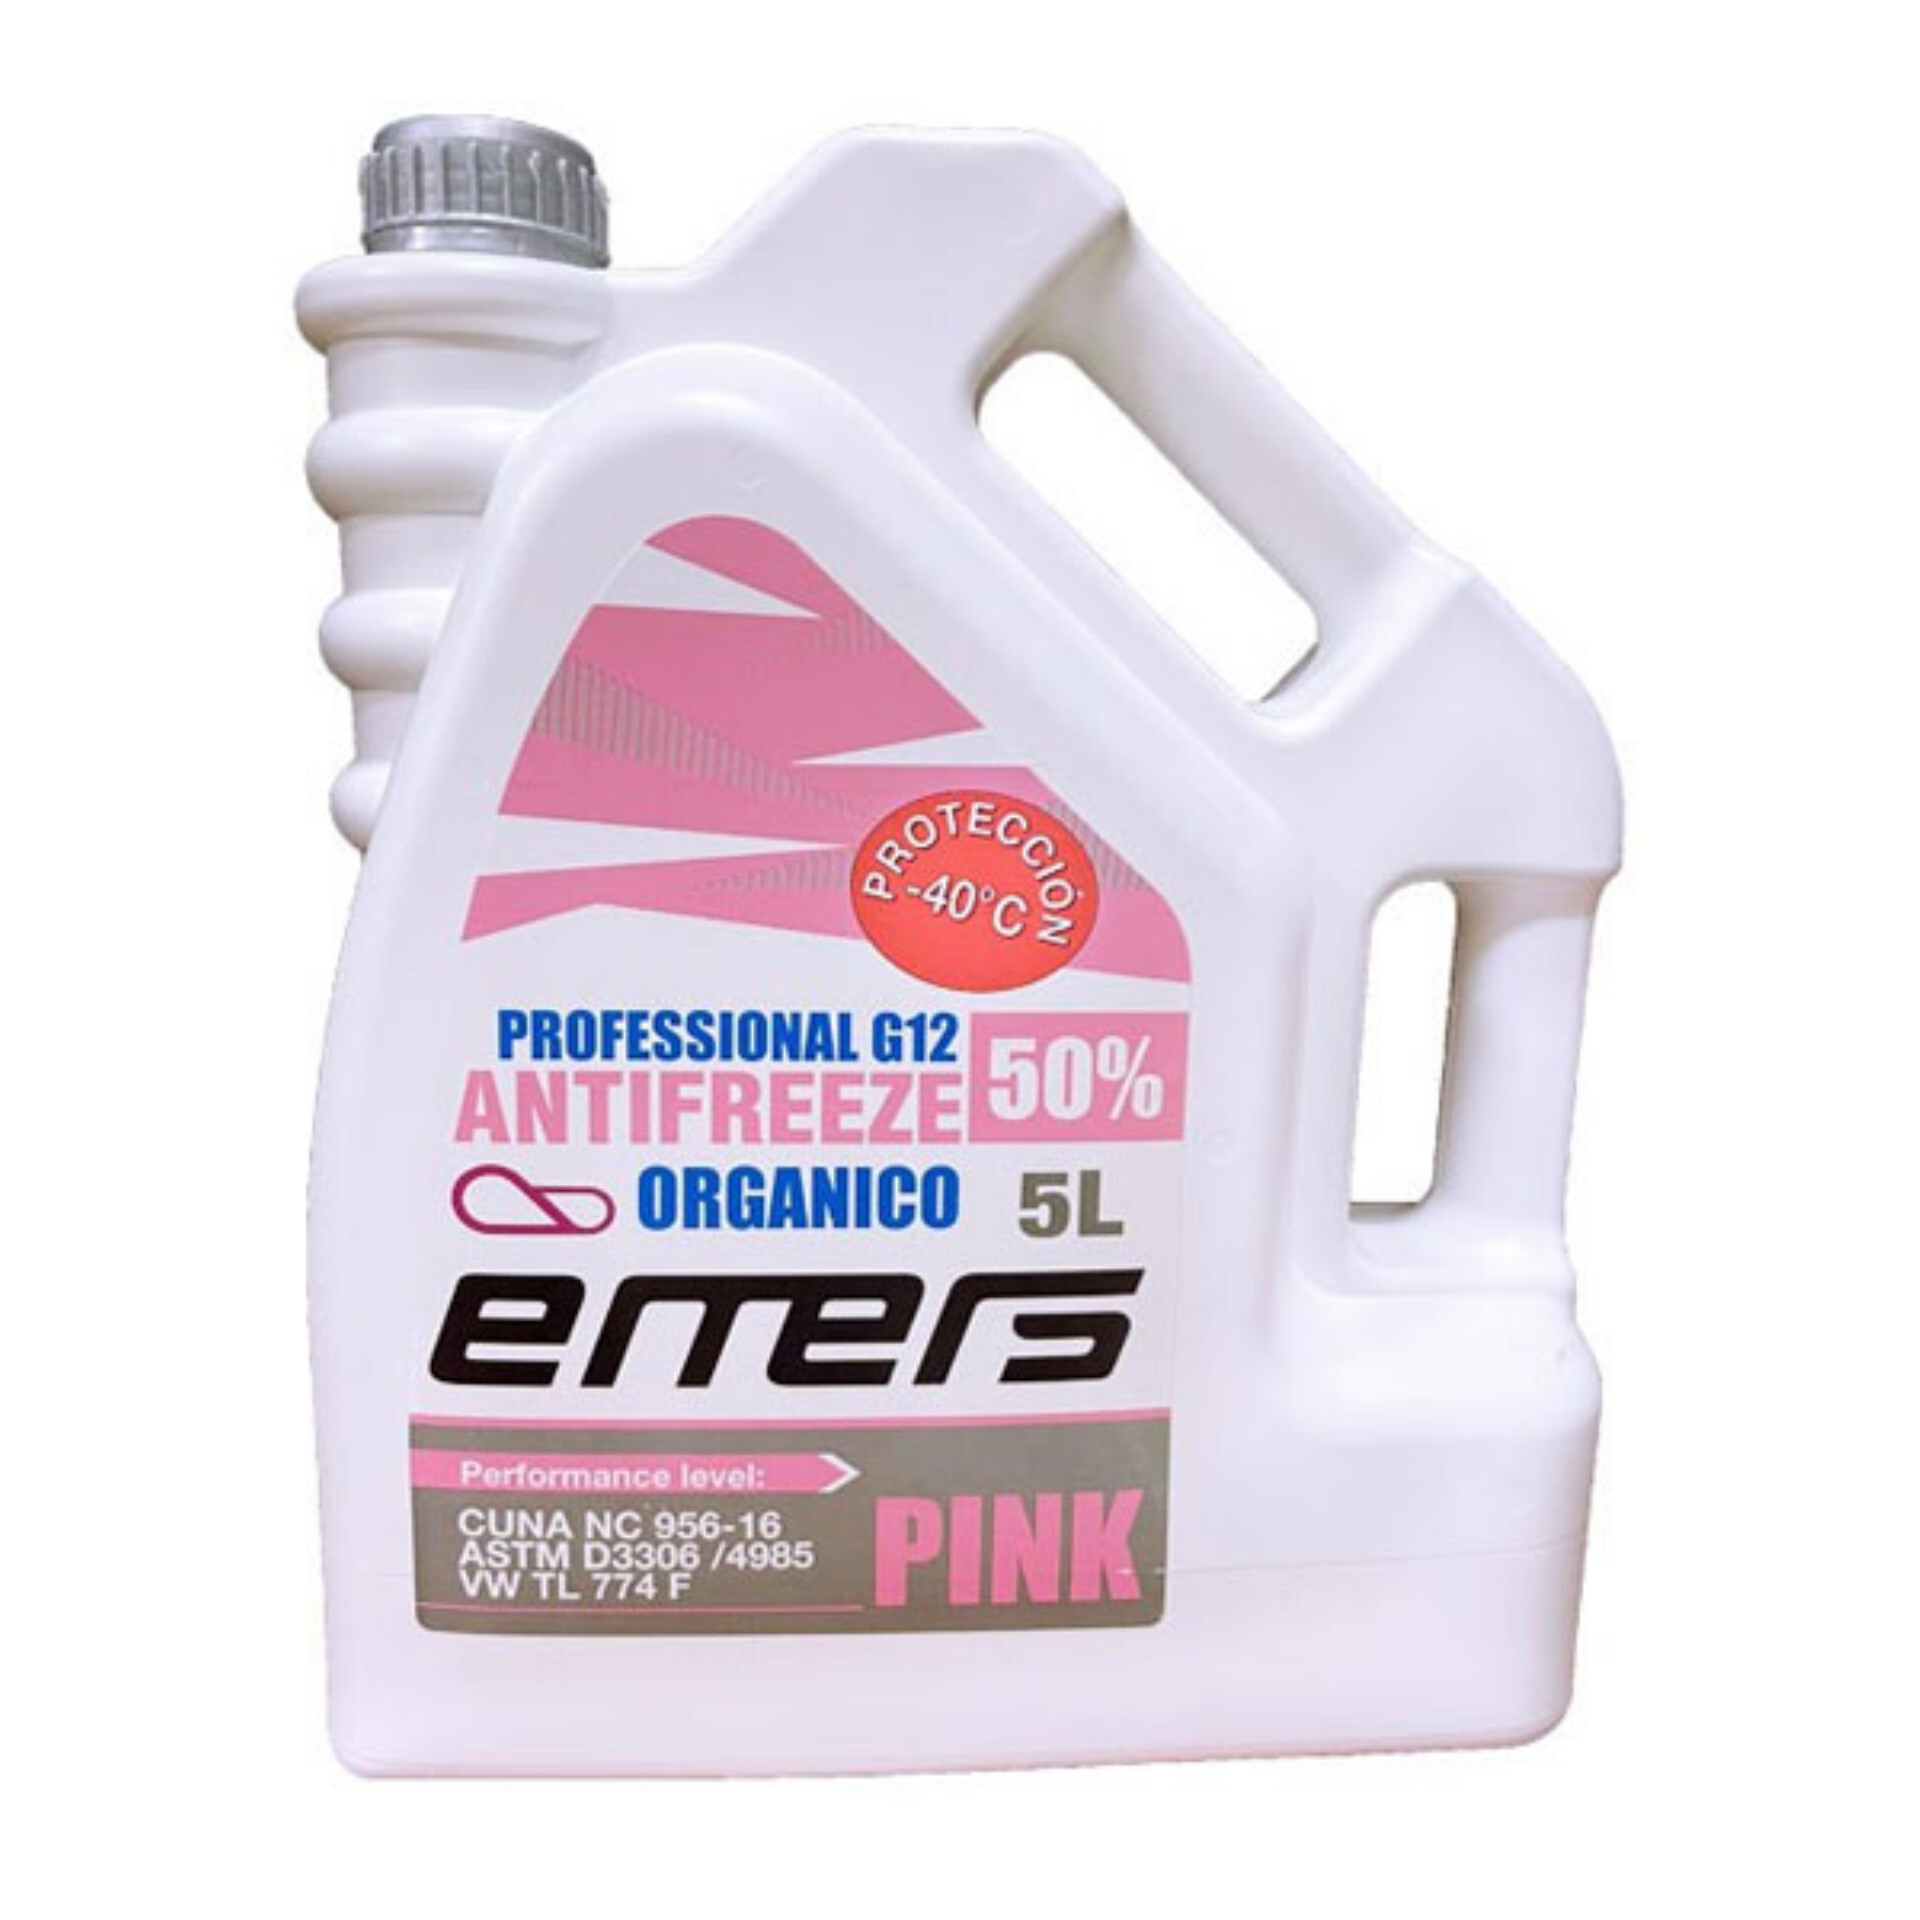 Anticongelante Refrigerante 50% 5 litros Coche Orgánico G12, PROTECCIÓN  -37º - AliExpress